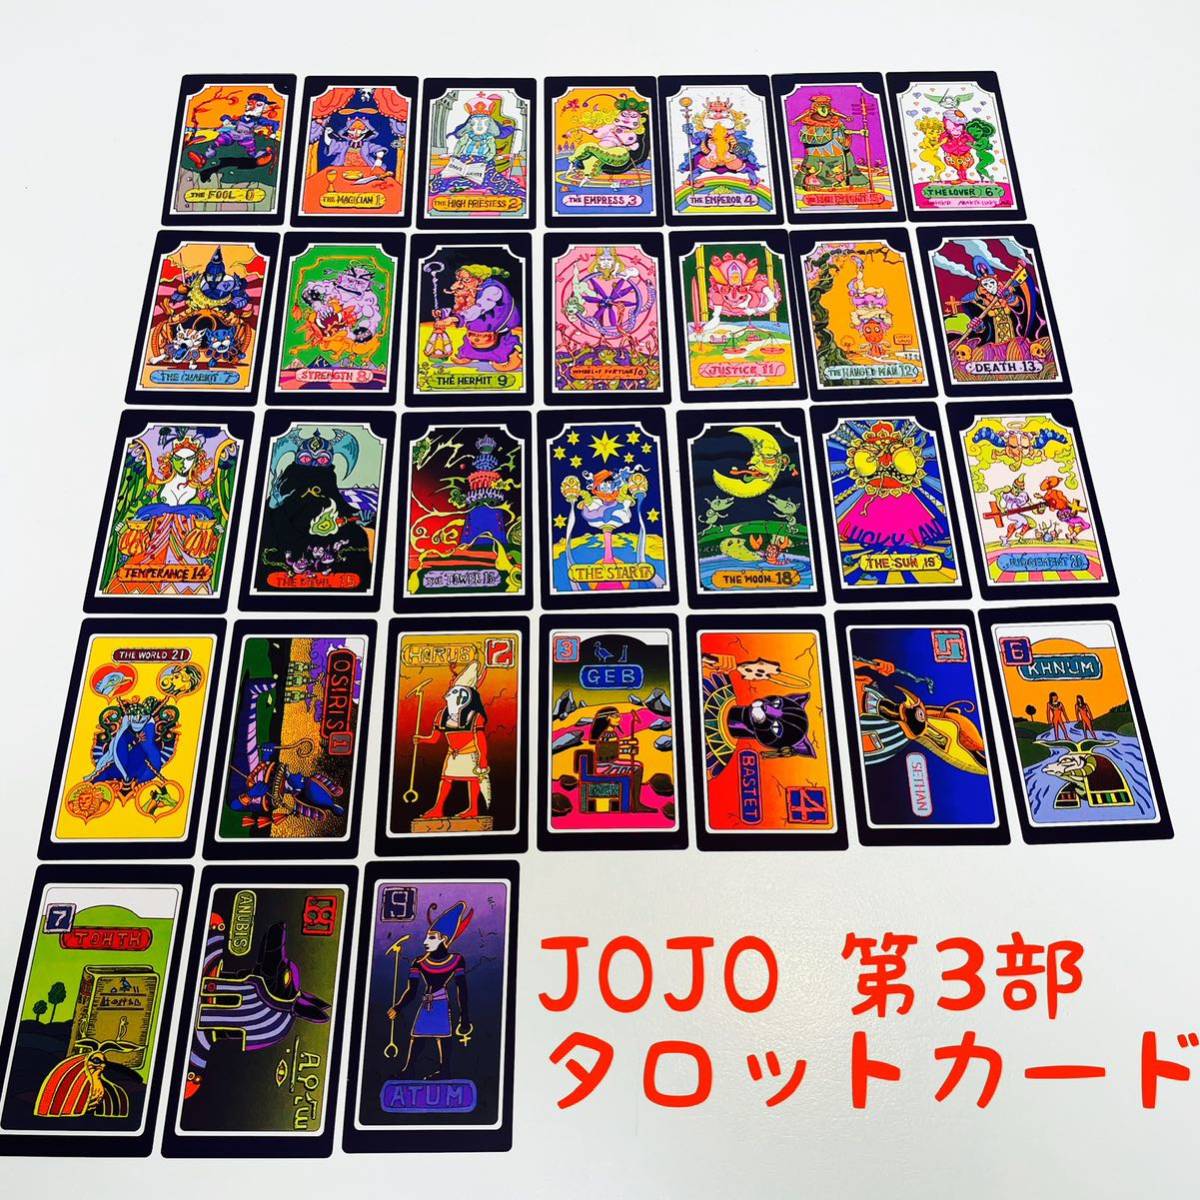 タロットカード付き日本版セル品「ジョジョの奇妙な冒険第３部OVA」DVD BOX アニメ 未使用新品